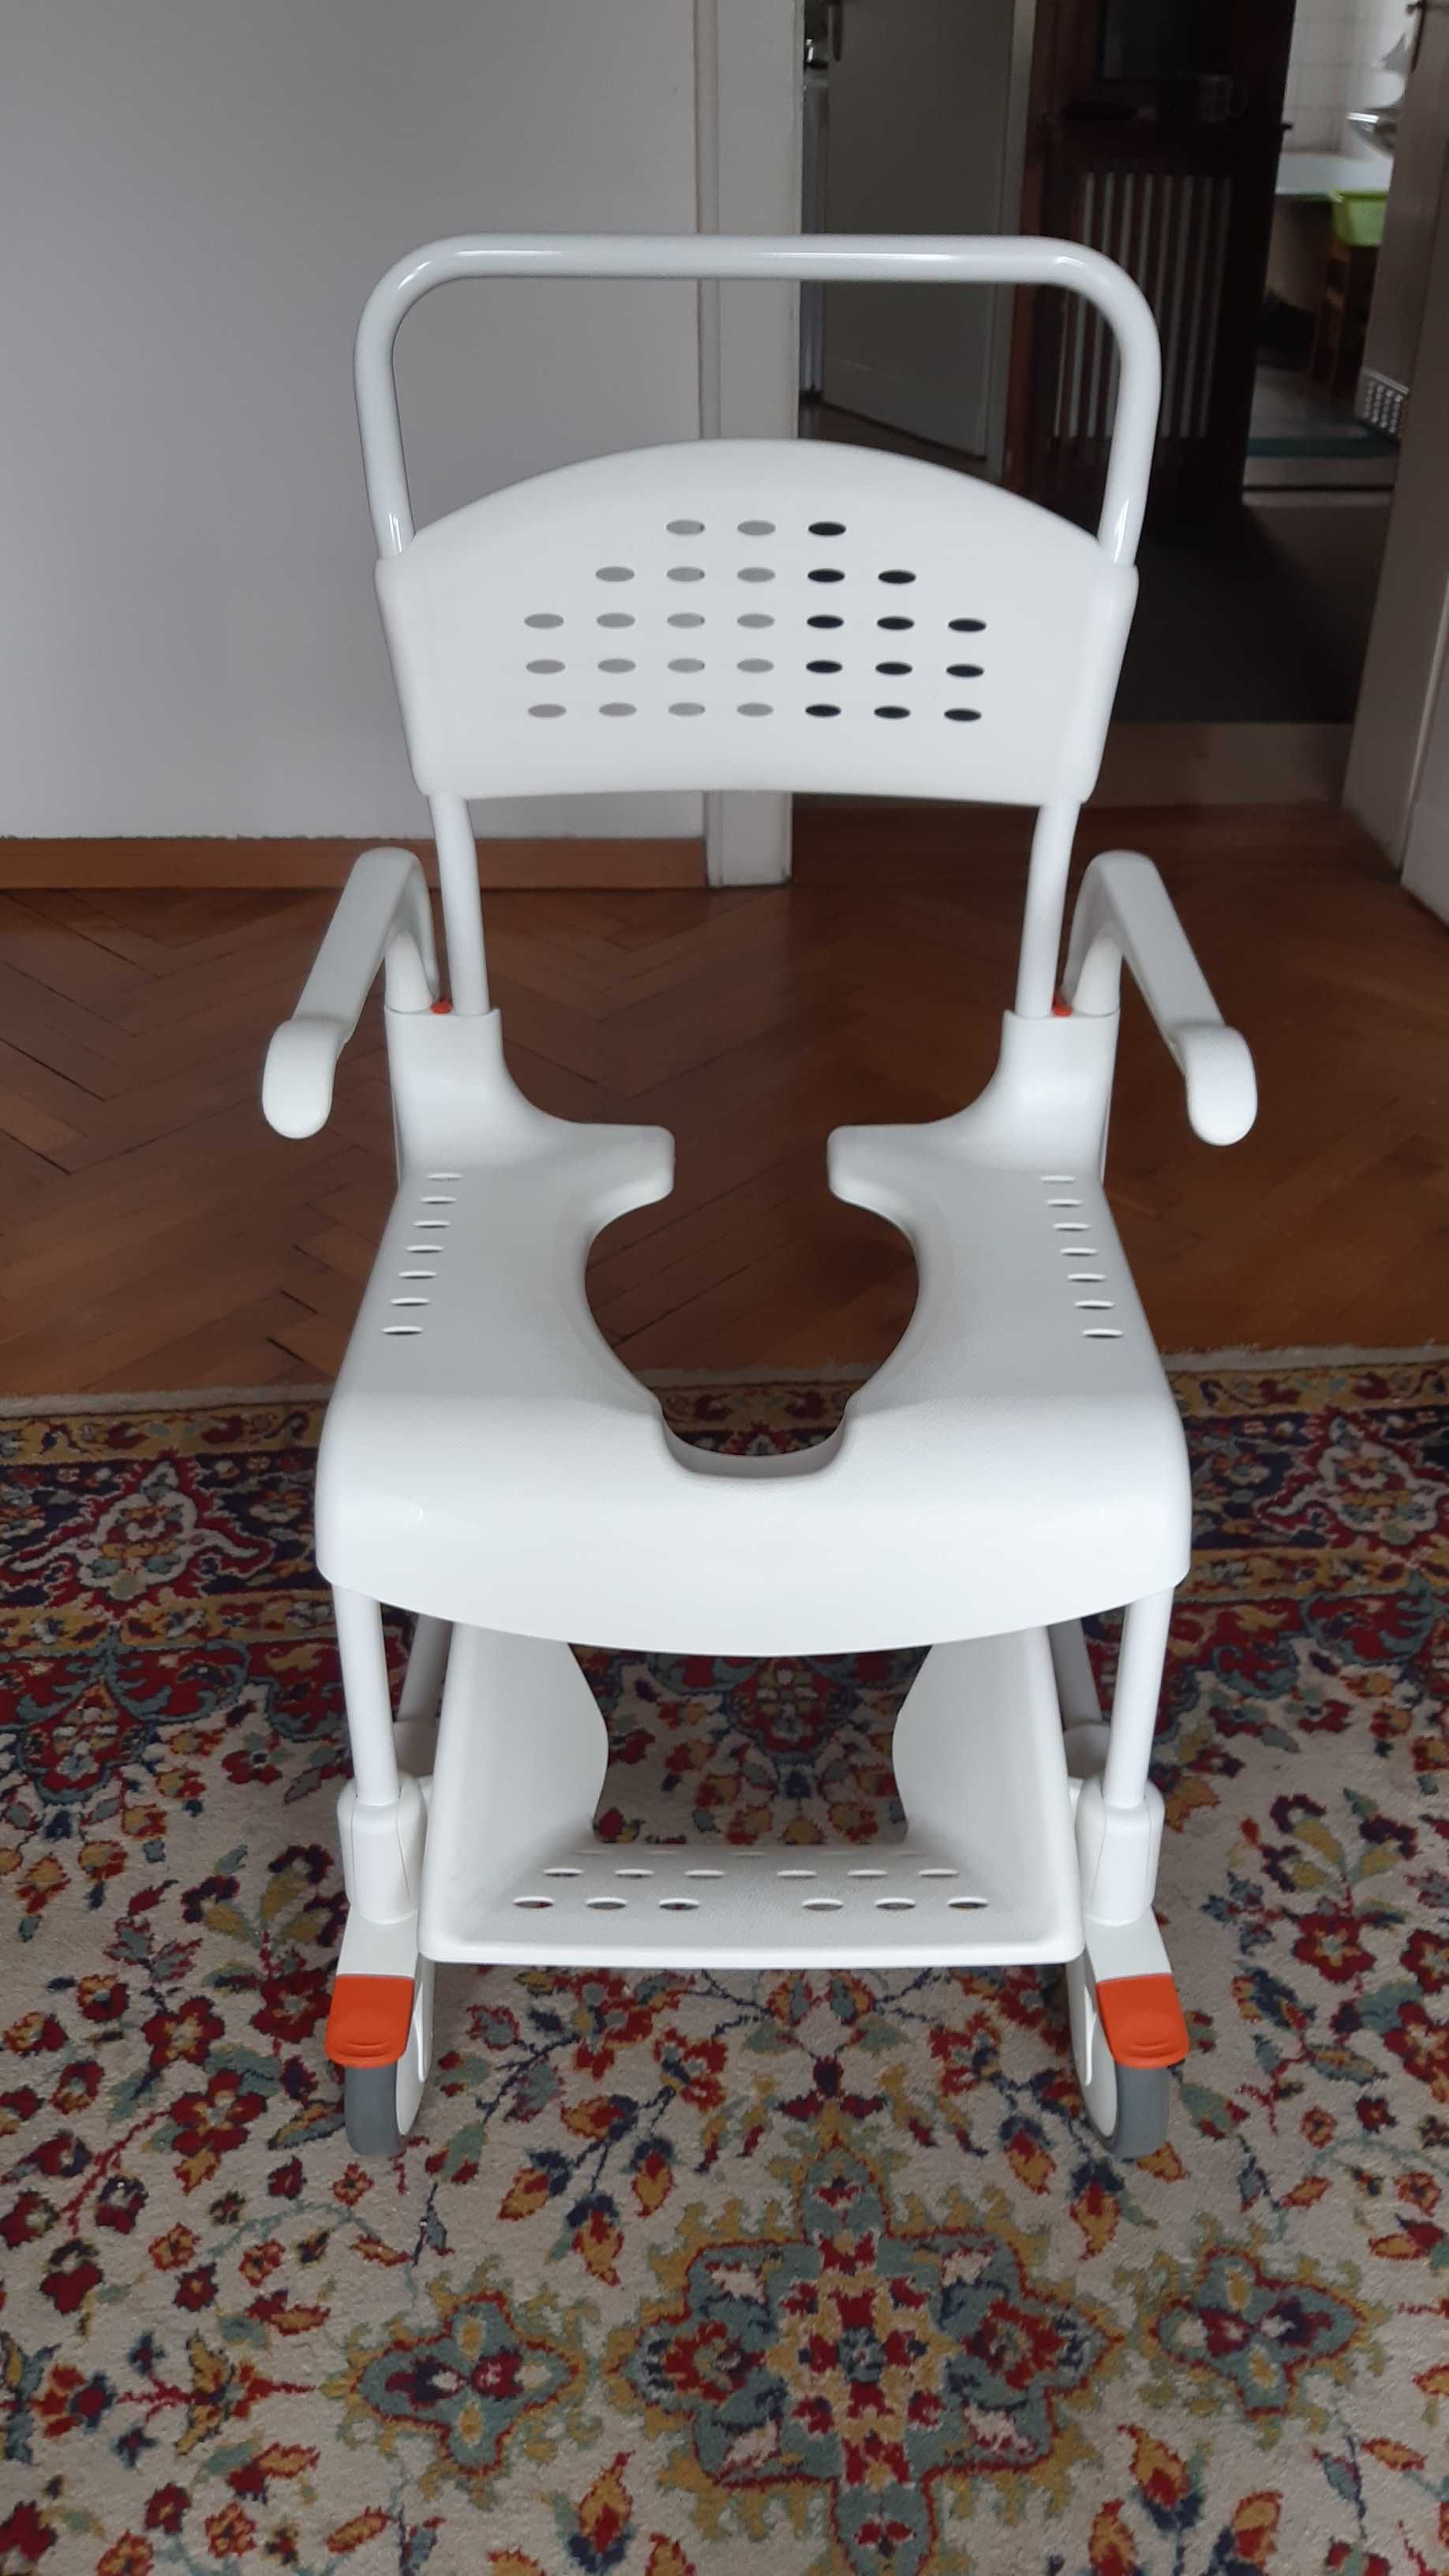 Wózek inwalidzki toaletowo-prysznicowy Etac Clean 49 cm - stan idealny